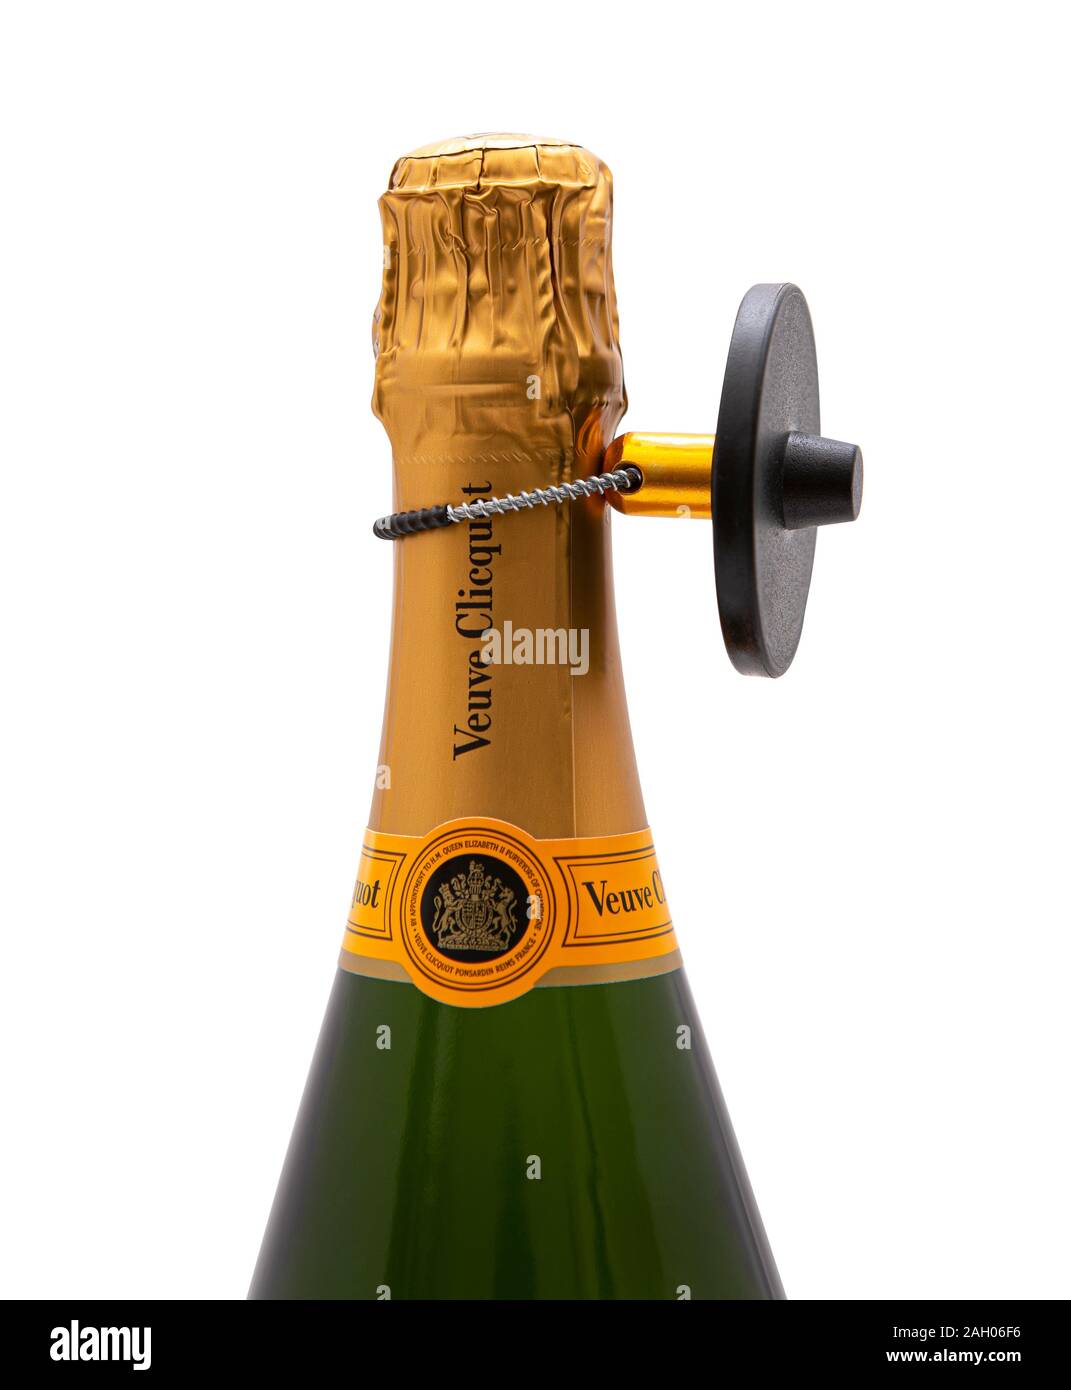 SWINDON, Royaume-Uni - le 22 décembre 2019 : Sécurité Tag sur une bouteille de Champagne Veuve Clicquot sur un fond blanc. Banque D'Images